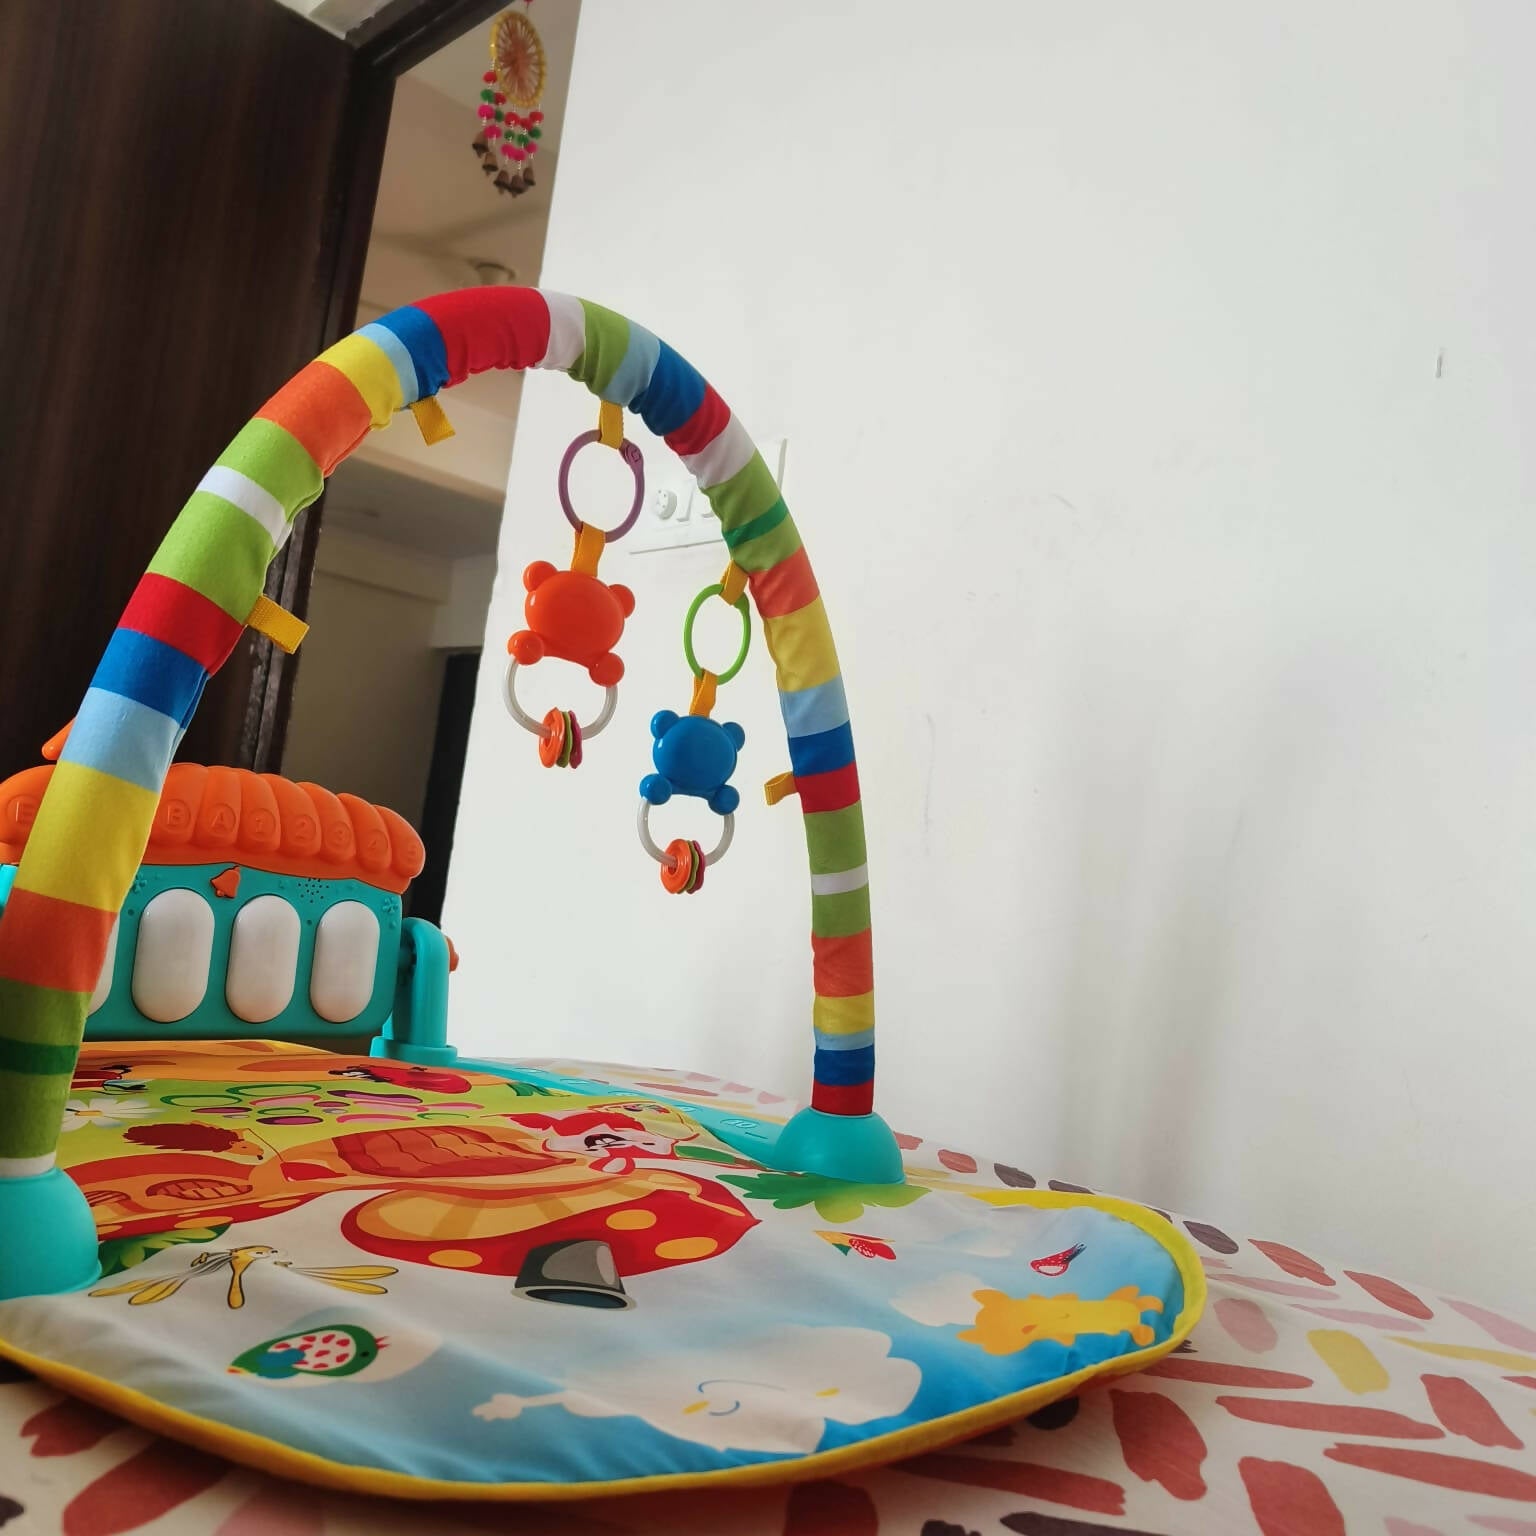 ZEST 4 TOYZ Baby Playmat - PyaraBaby